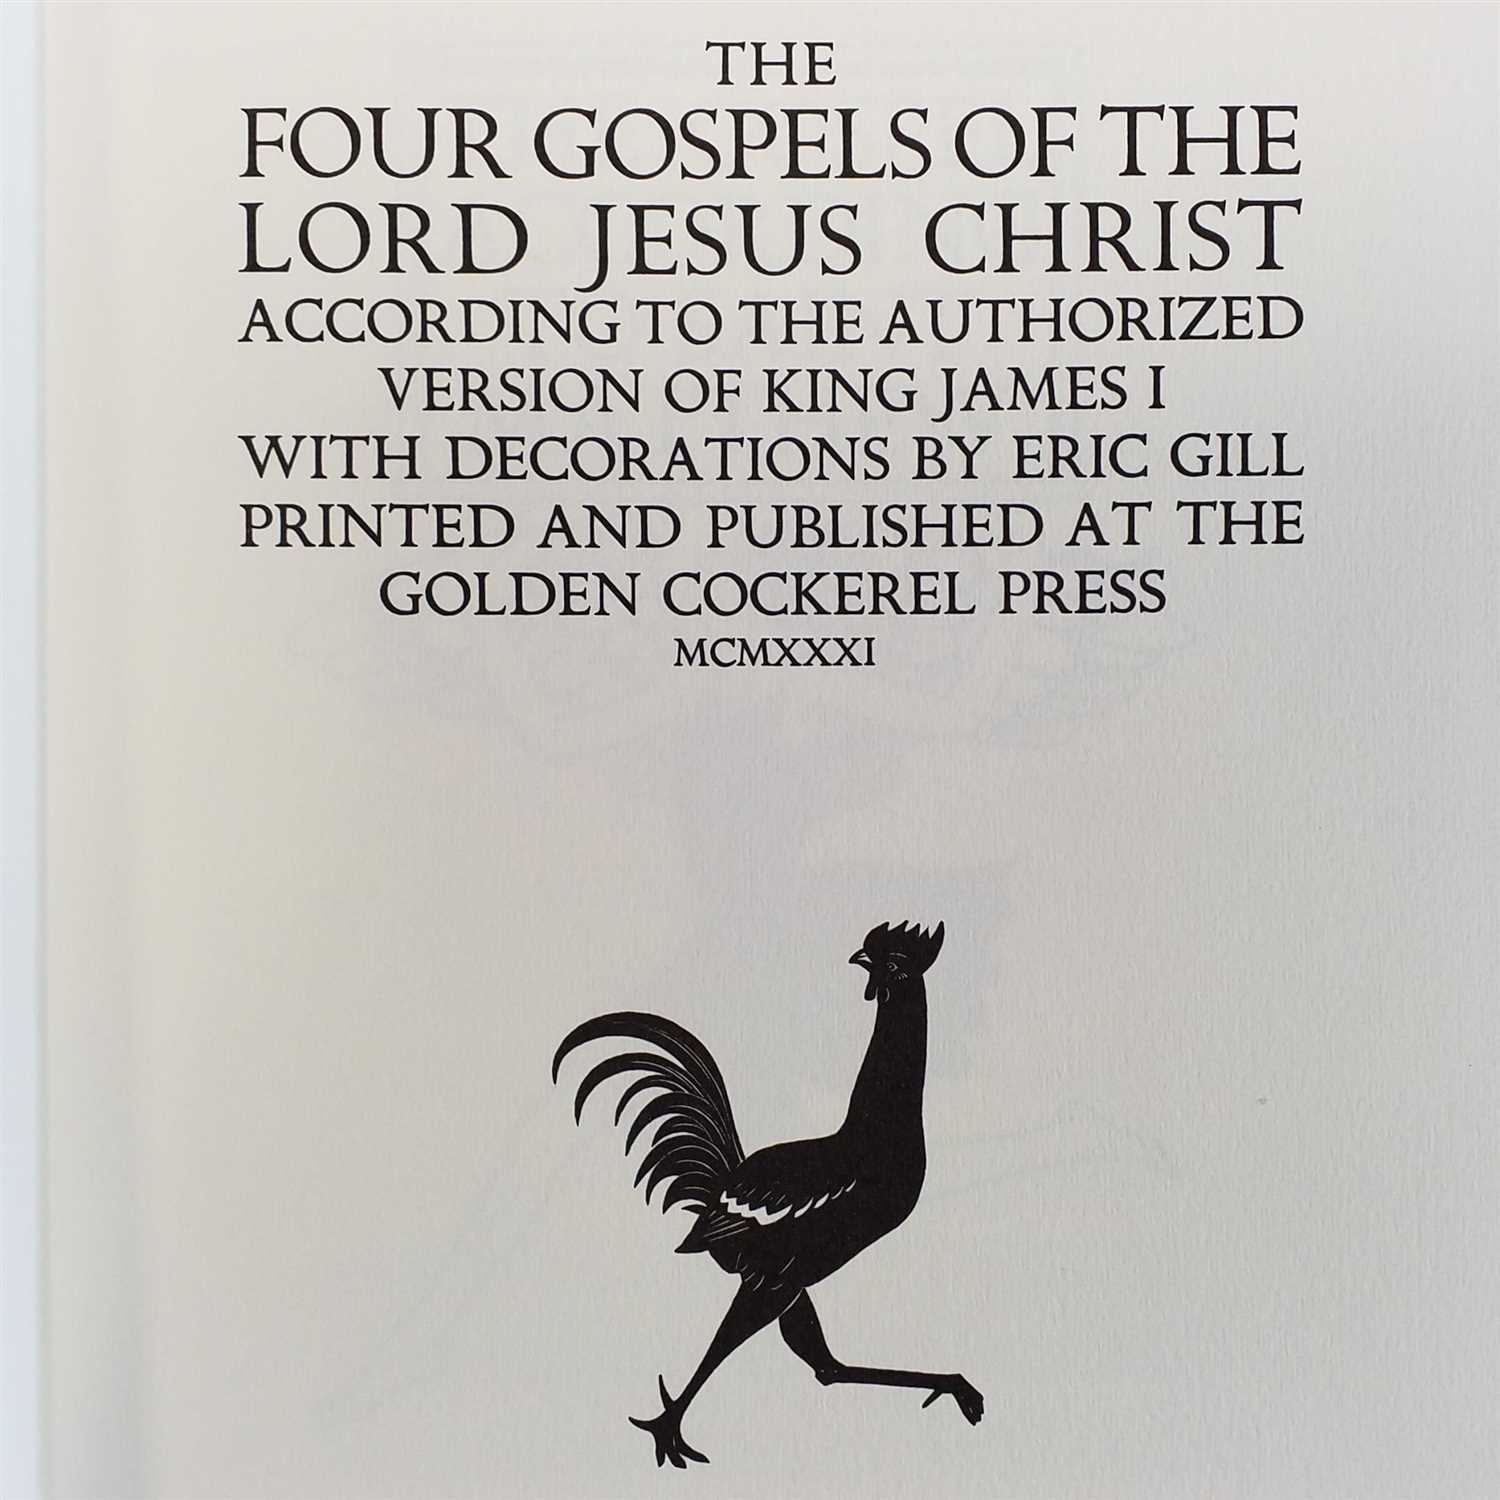 Lot 180 Gill Eric Illustrator The Four Gospels